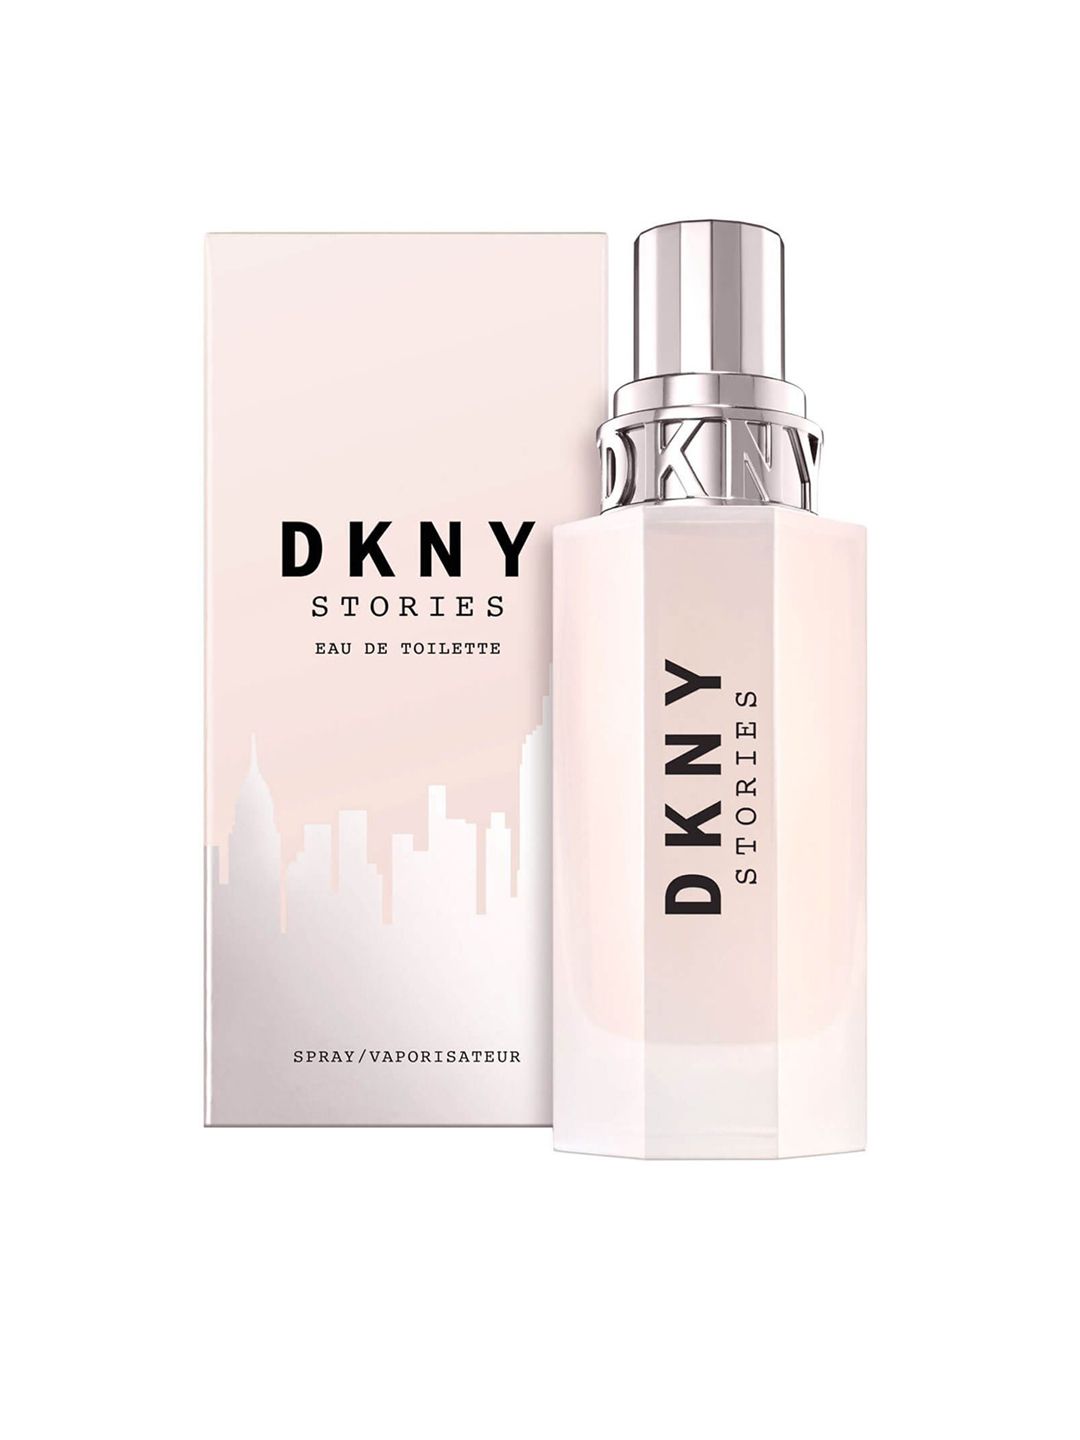 DKNY Women Stories Eau de Toilette 100 ml Price in India